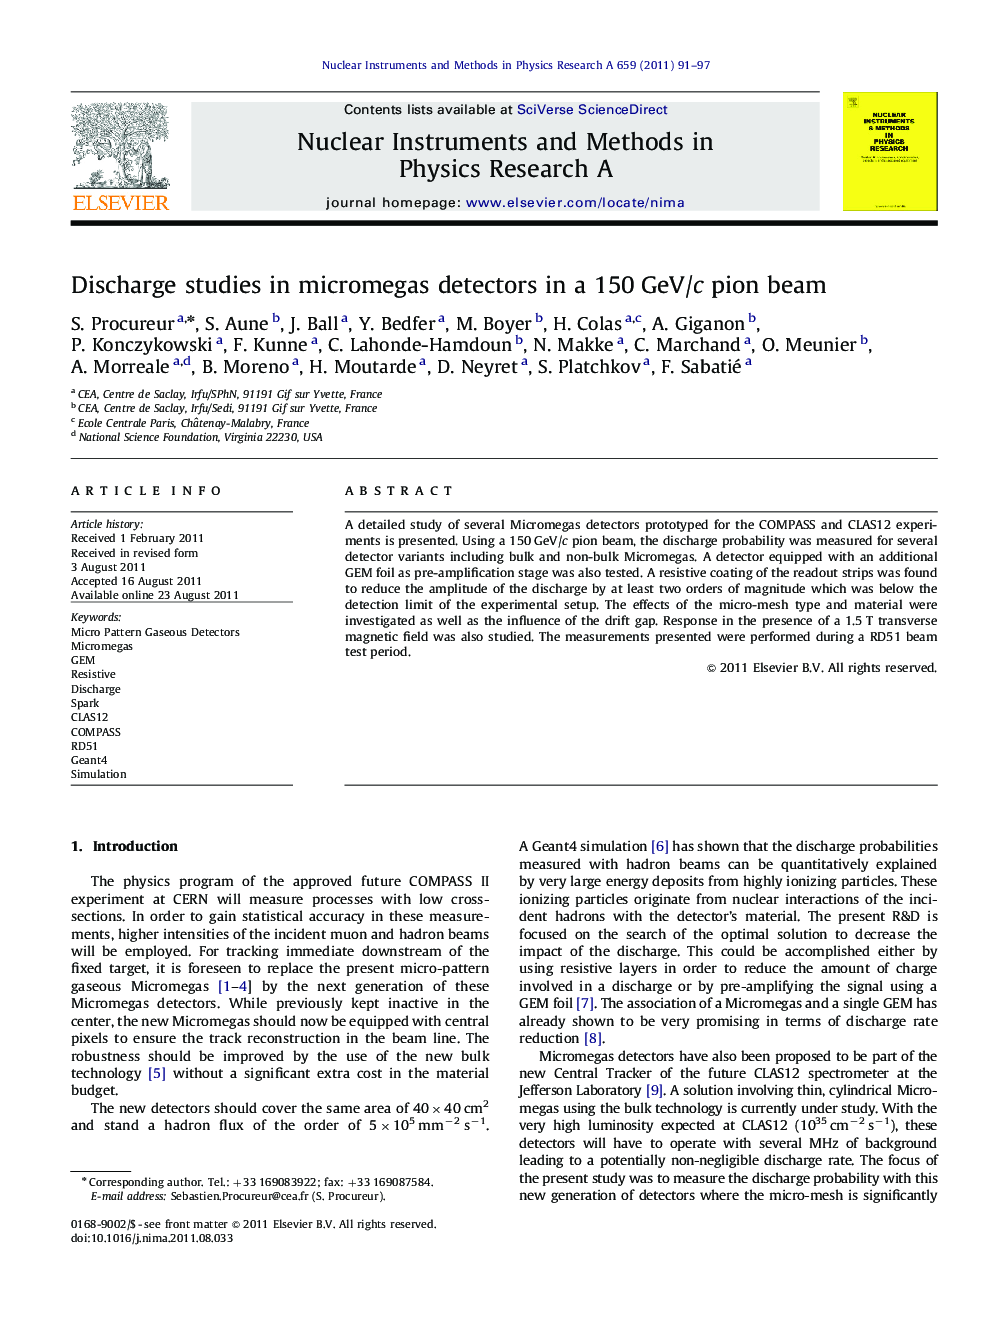 Discharge studies in micromegas detectors in a 150Â GeV/c pion beam